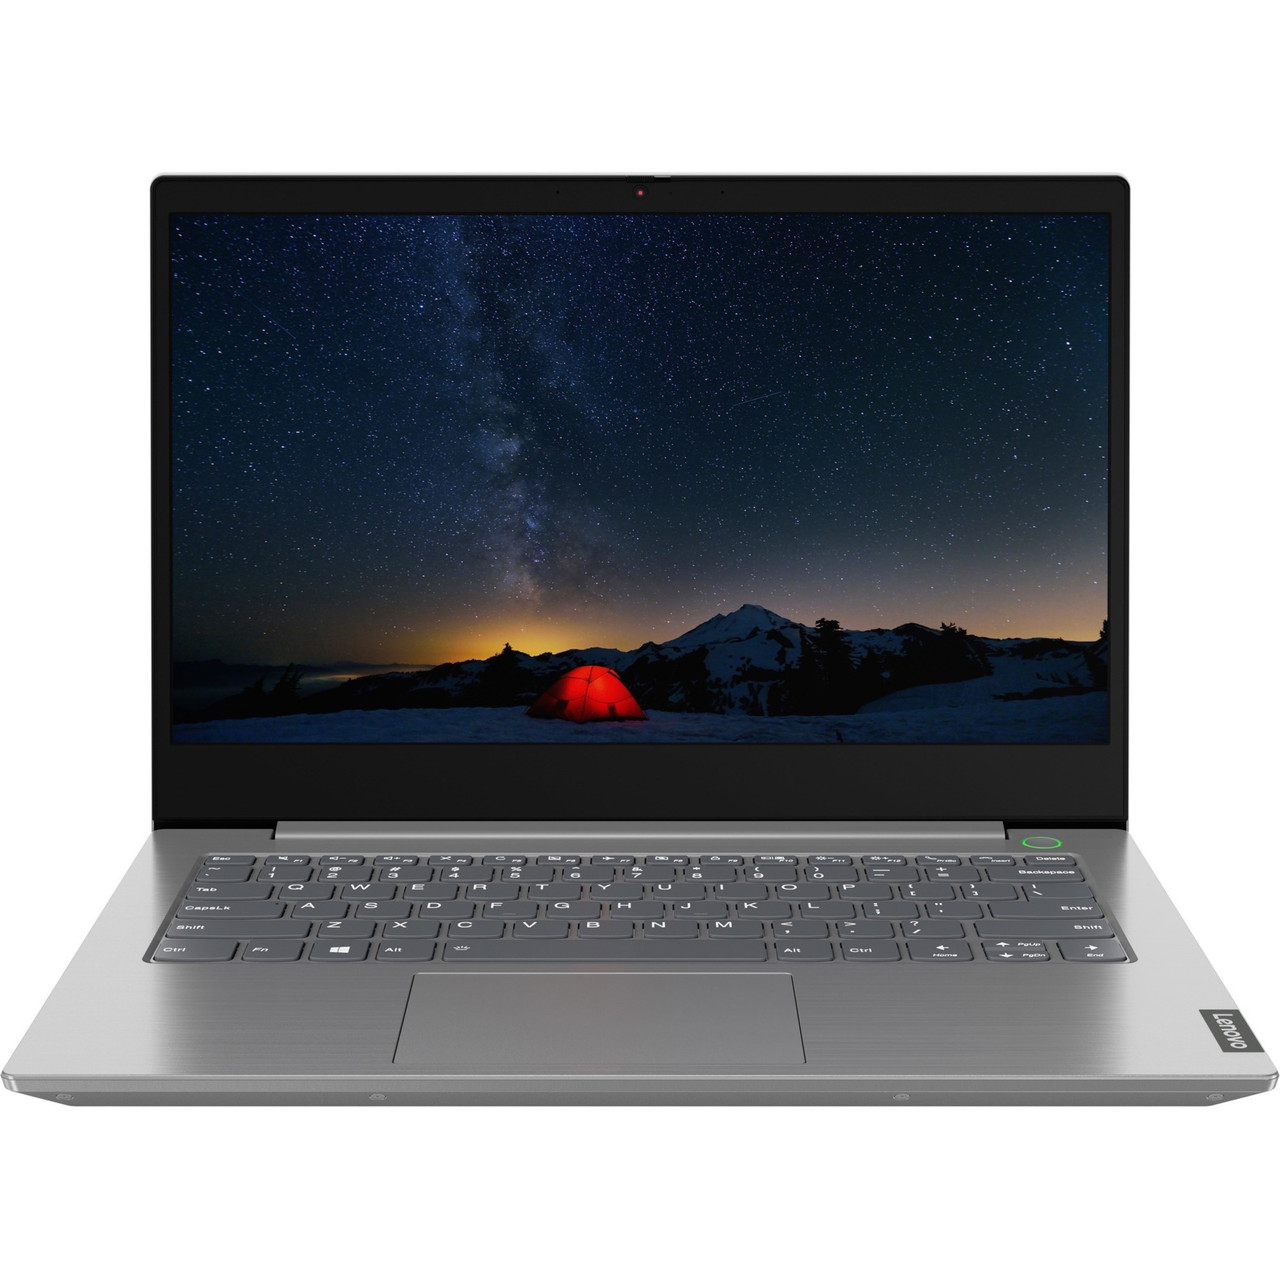 Lenovo ThinkBook 14-IIL 20SL0016US 14" Notebook - Full HD - 1920 x 1080 - Intel Core i7 10th Gen i7-1065G7 Quad-core (4 Core) 1.30 GHz - 16 GB Total RAM - 512 GB SSD - Mineral Gray - 20SL0016US